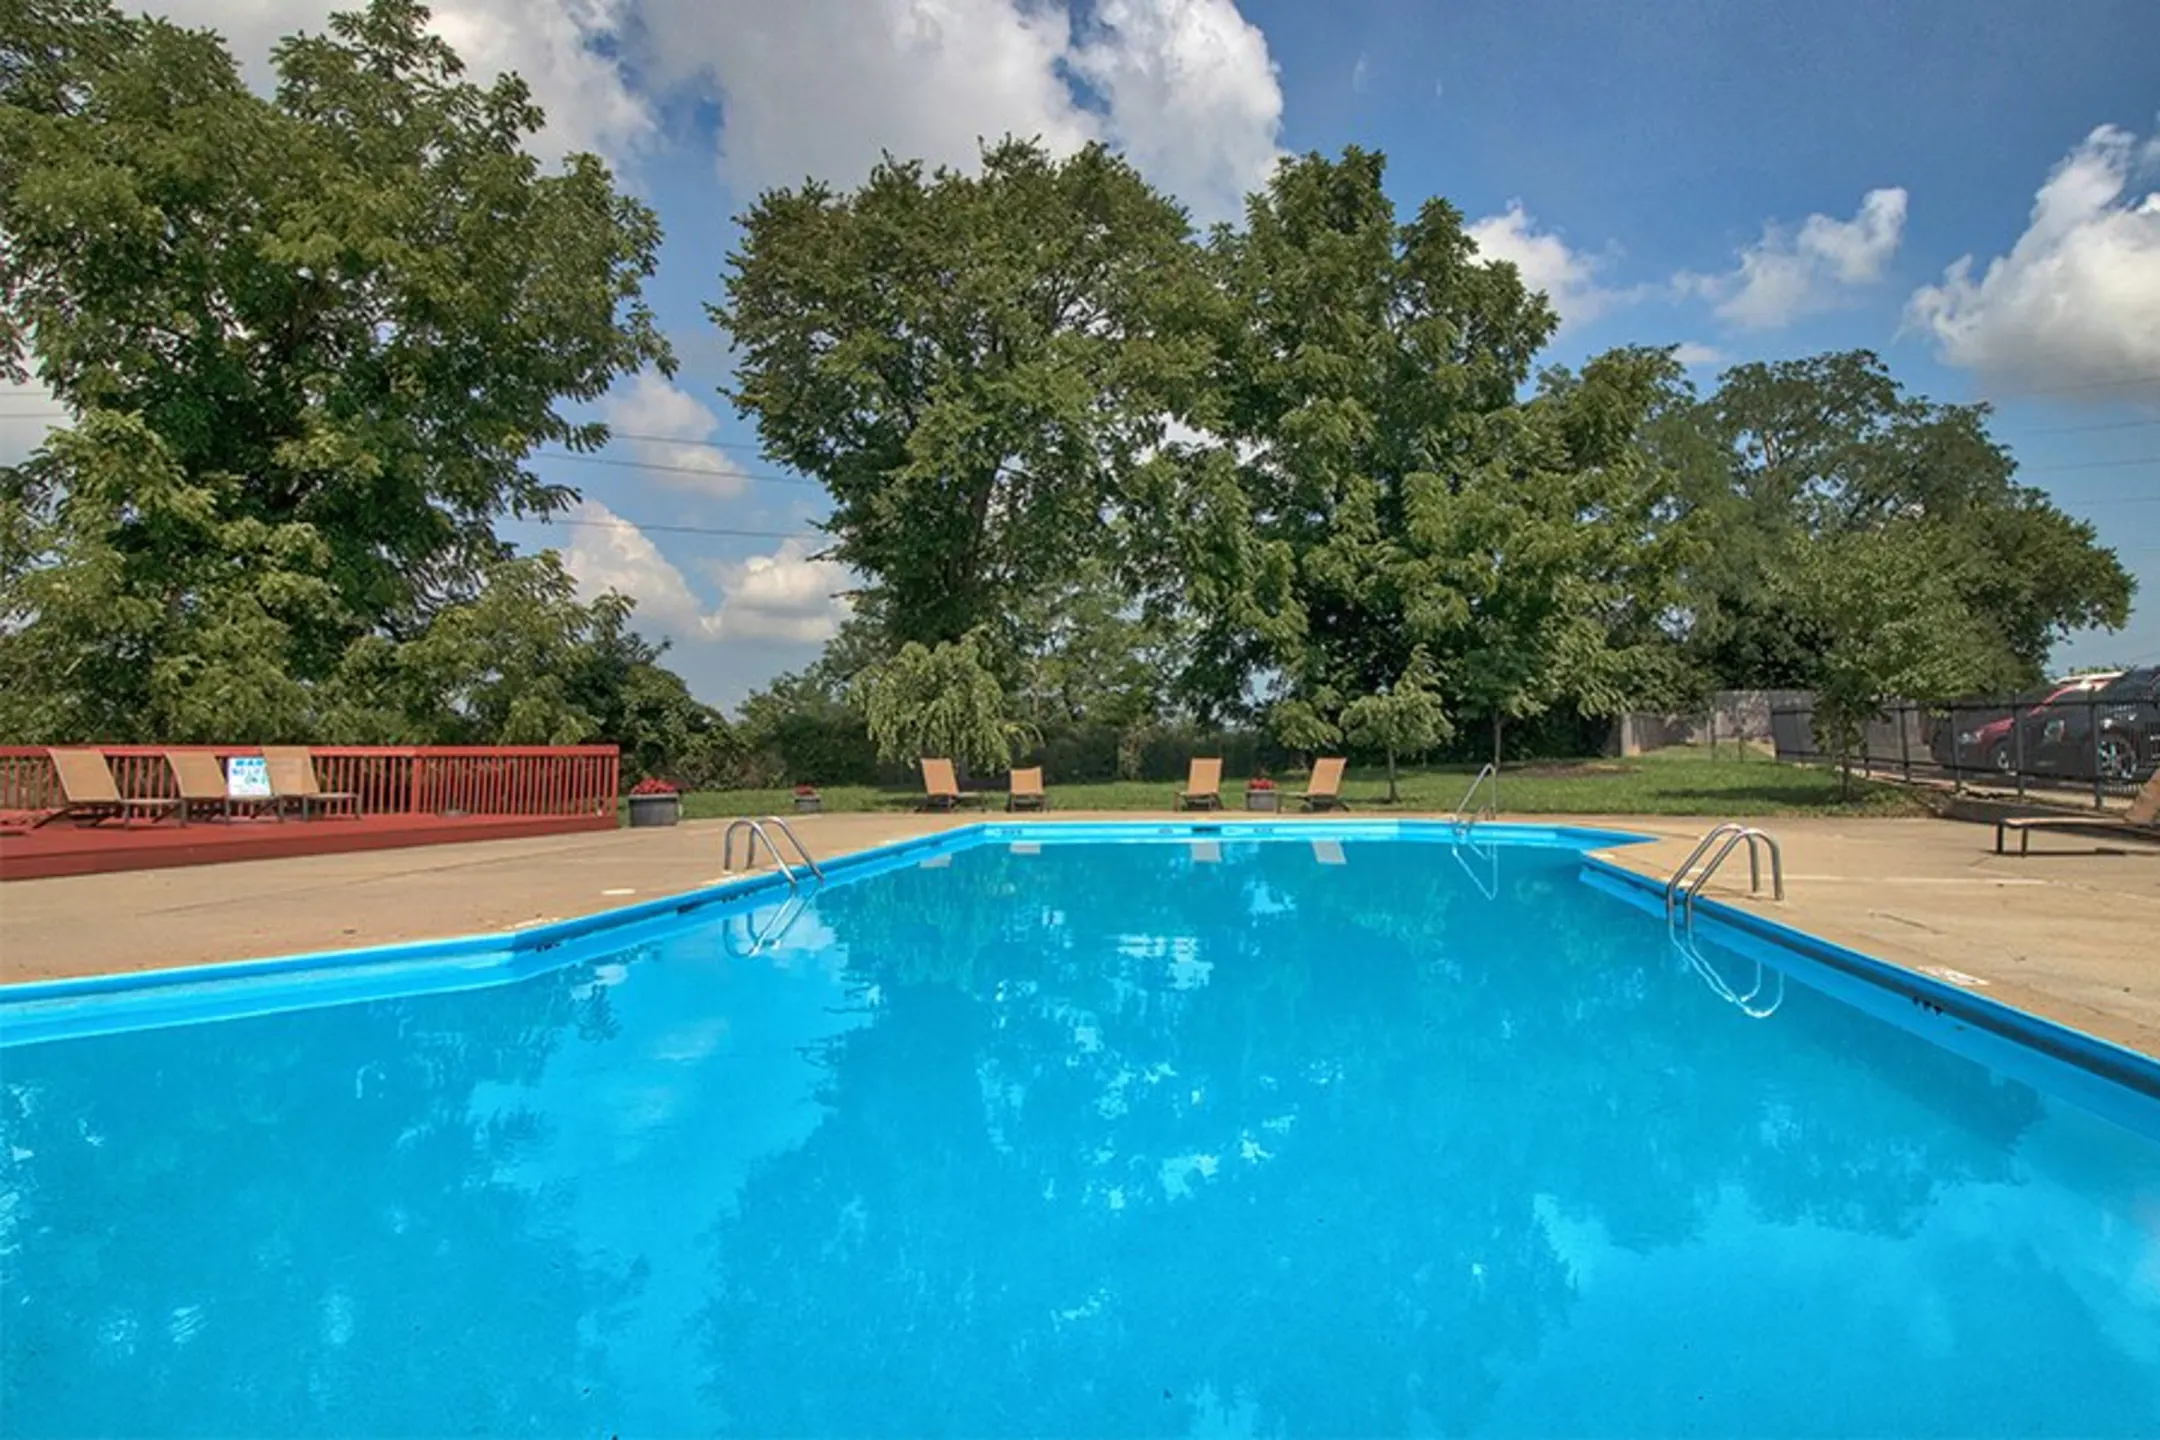 Pool - Lakeshore Drive Apartments - Cincinnati, OH